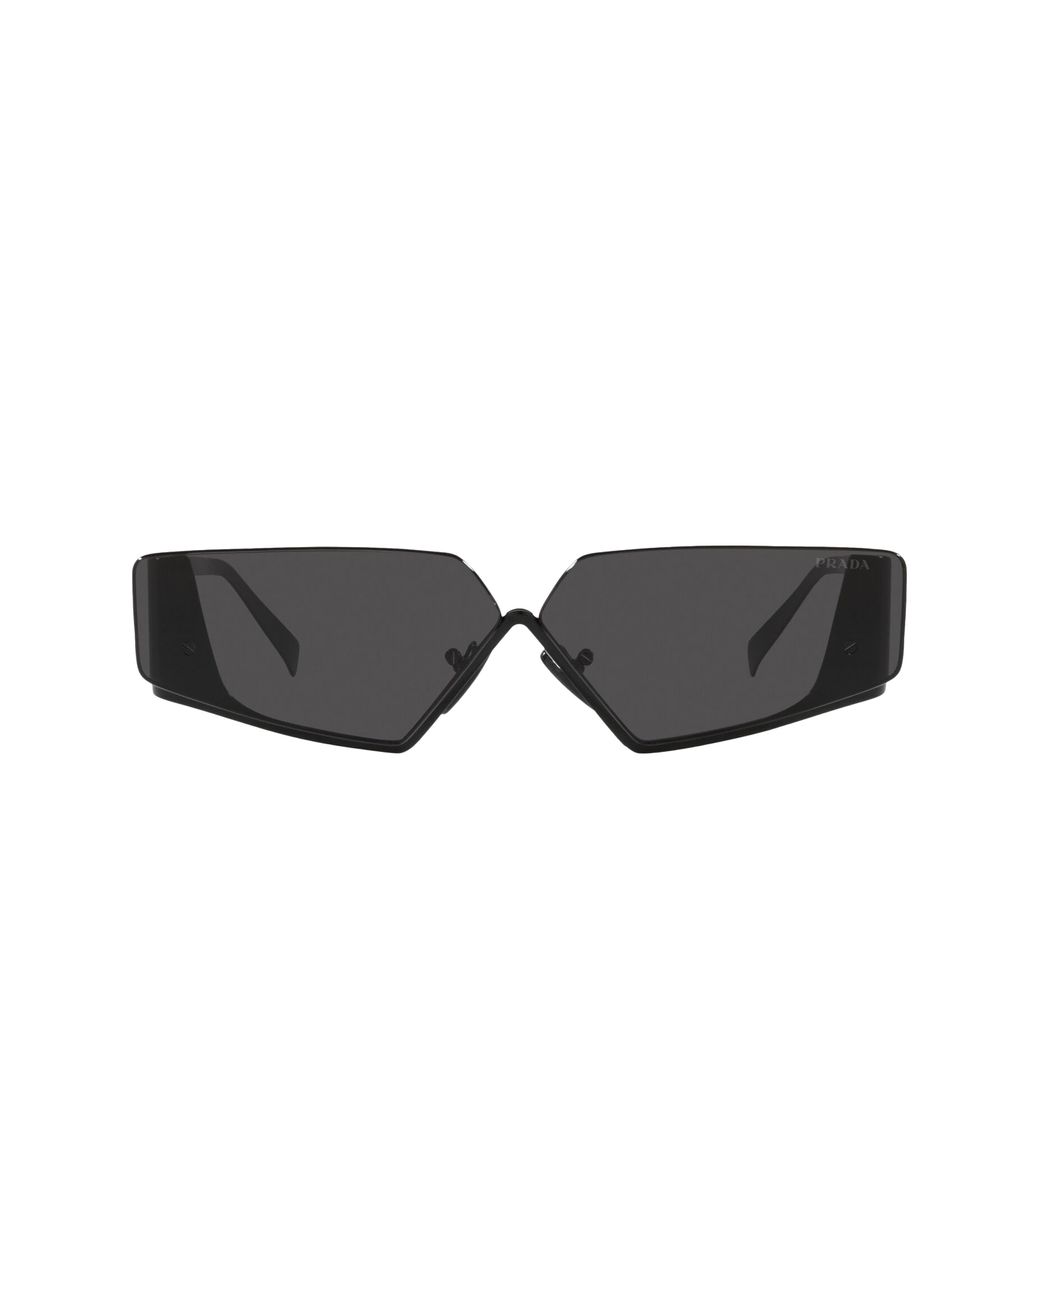 Prada 57mm Rectangular Sunglasses in Black | Lyst